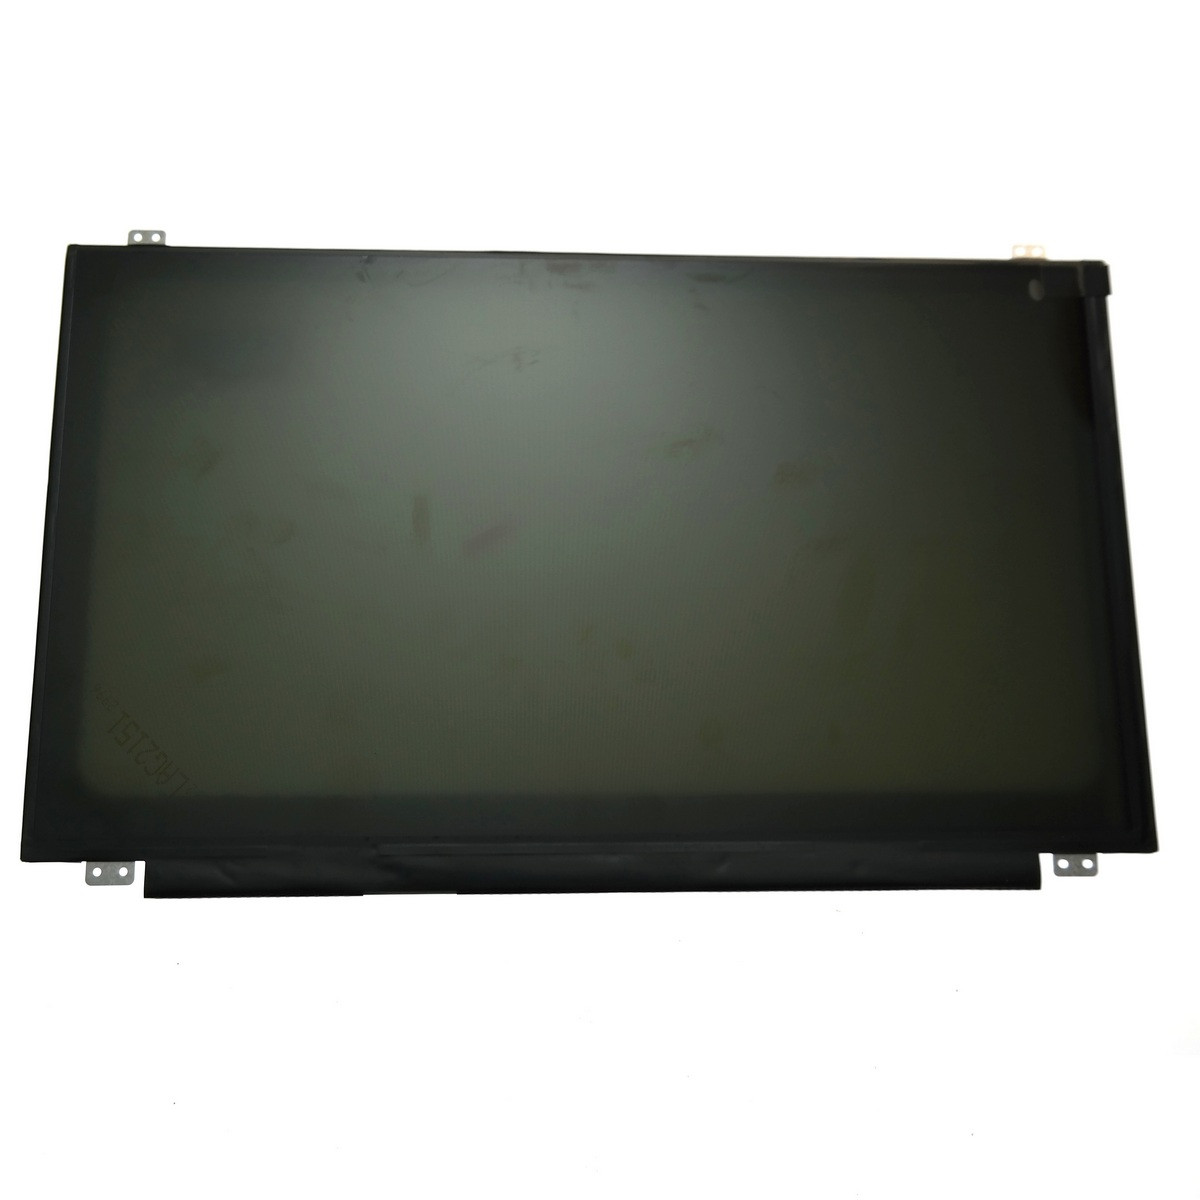 Матрица для ноутбука Acer Aspire V3-572 V3-572G V3-574 V3-574G 60hz 30 pin edp 1366x768 nt156whm-n42 мат